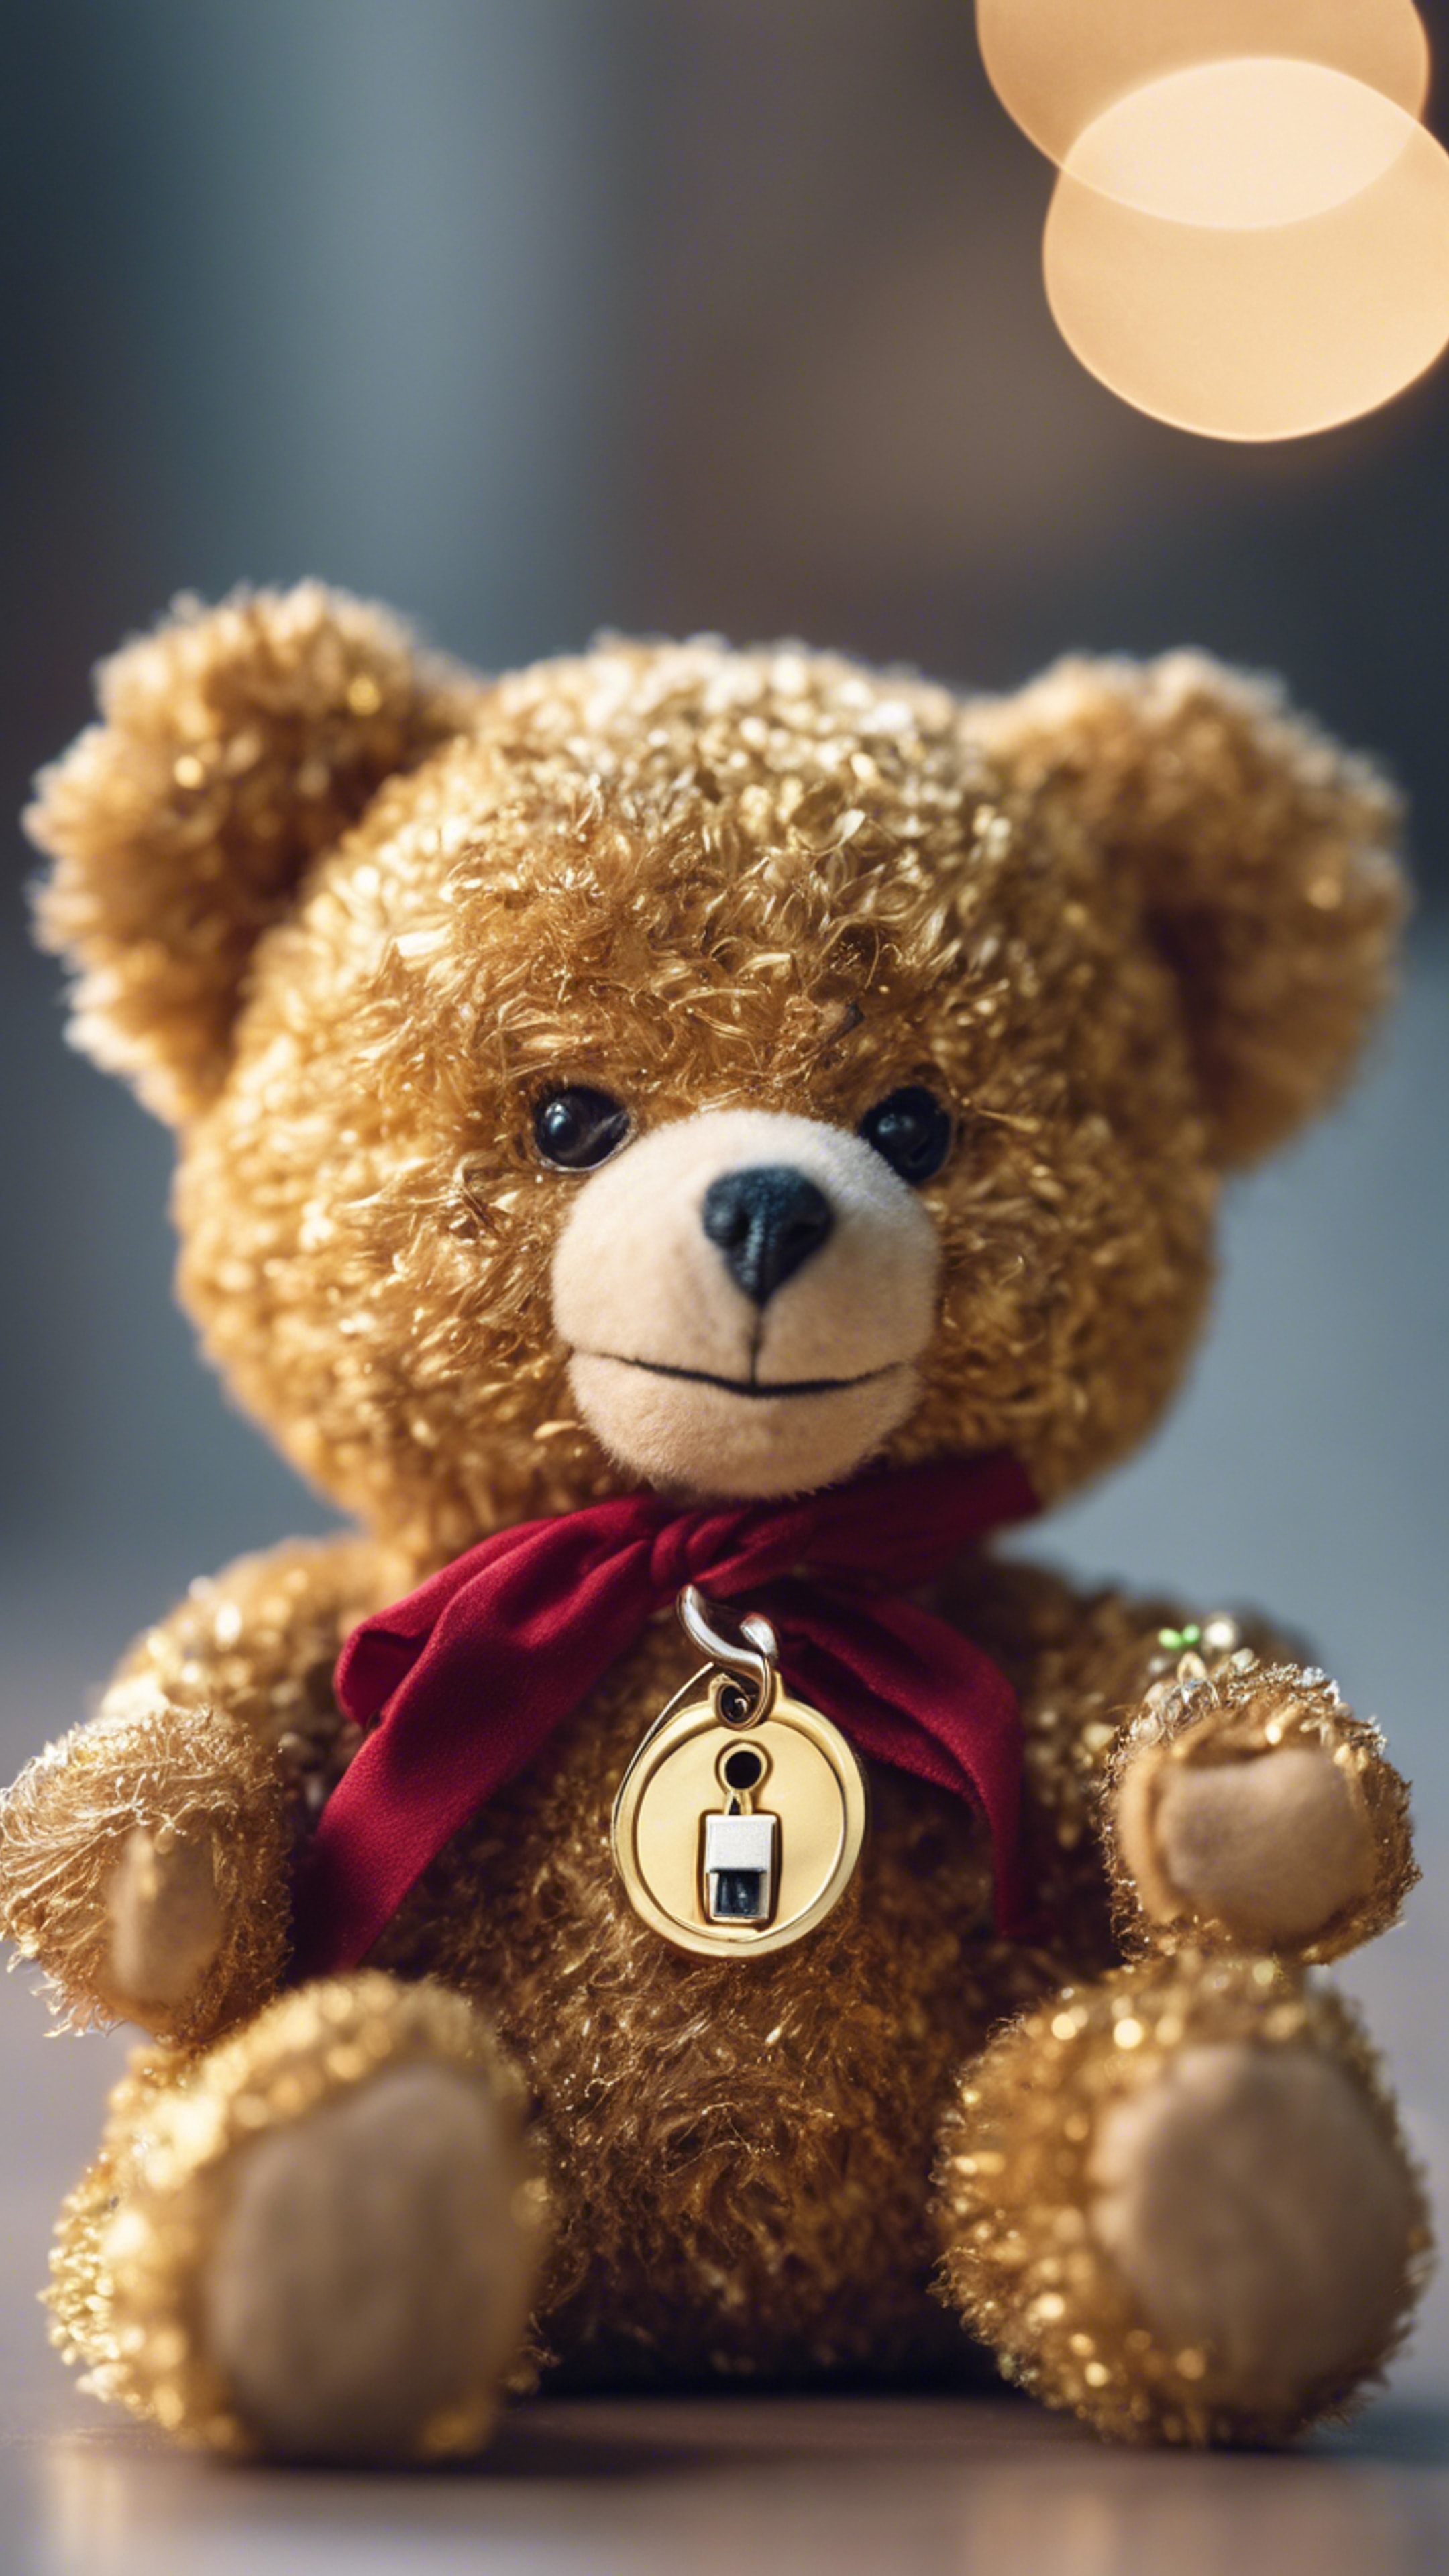 A teddy bear holding a shiny golden key. Tapet[5d2fb50236af4c678fb0]